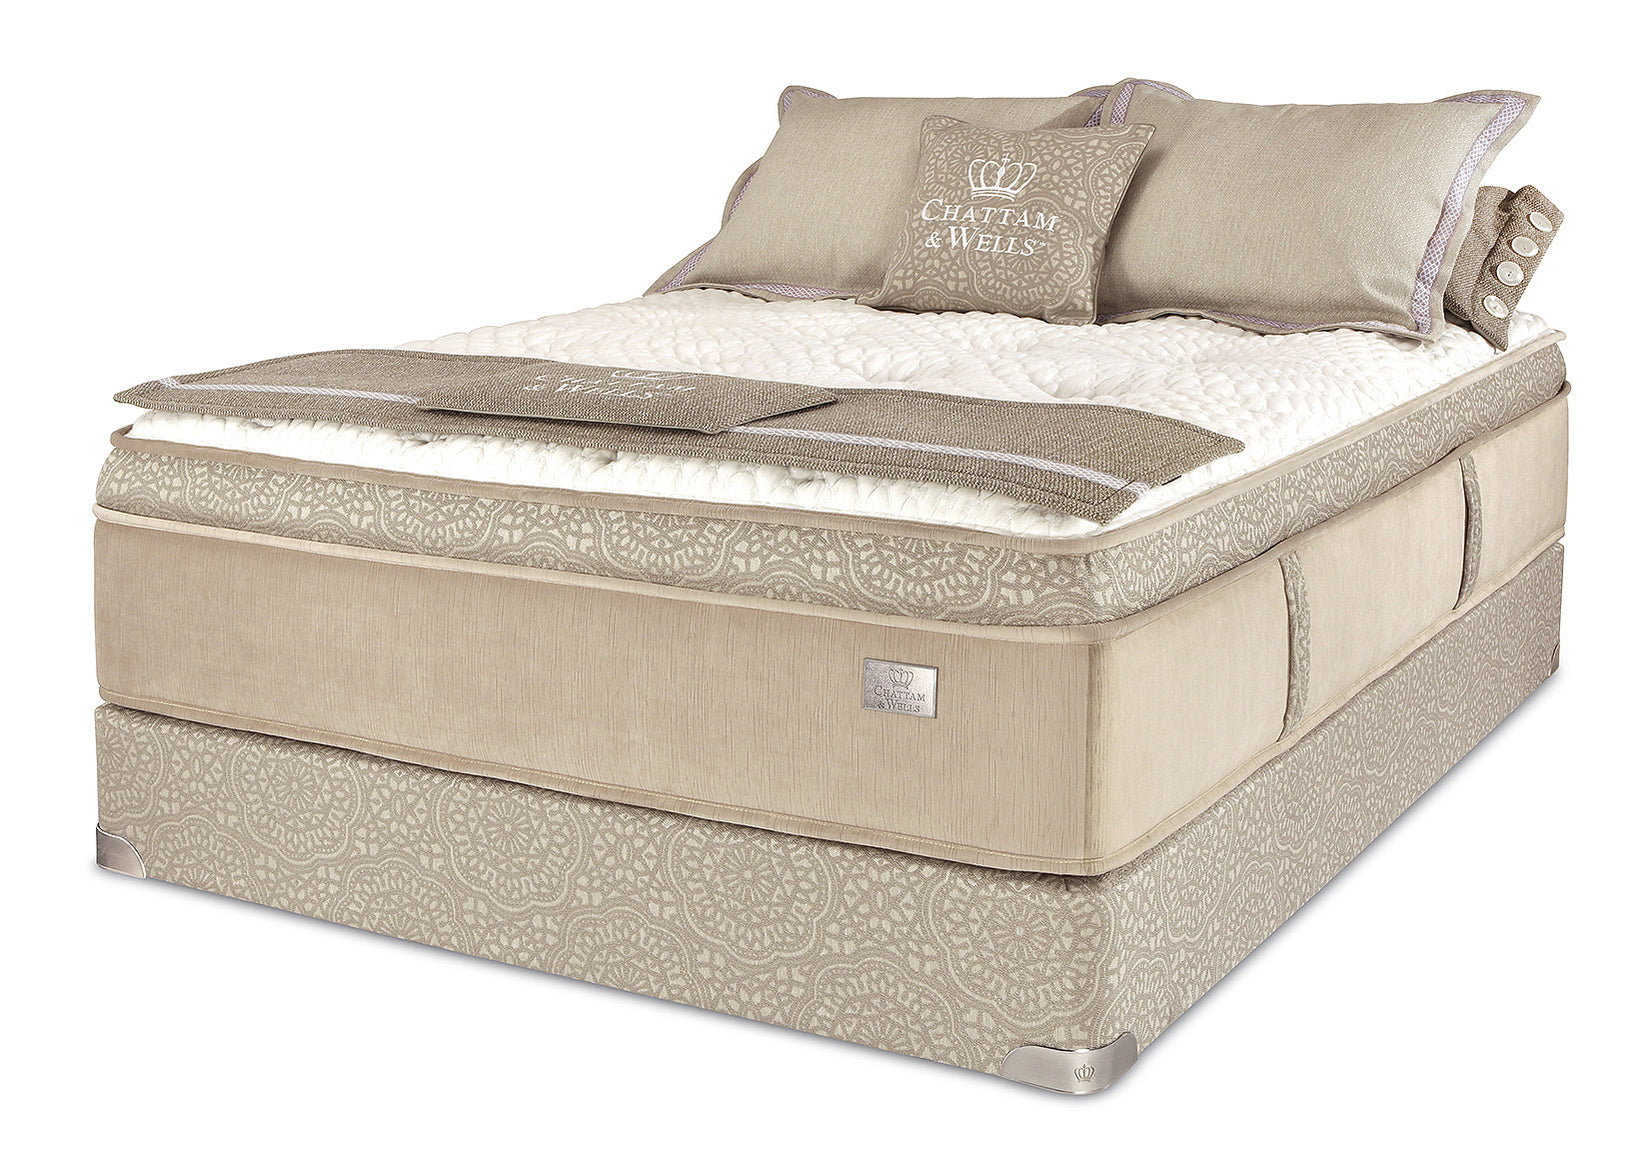 chattam & wells franklin latex euro top queen mattress